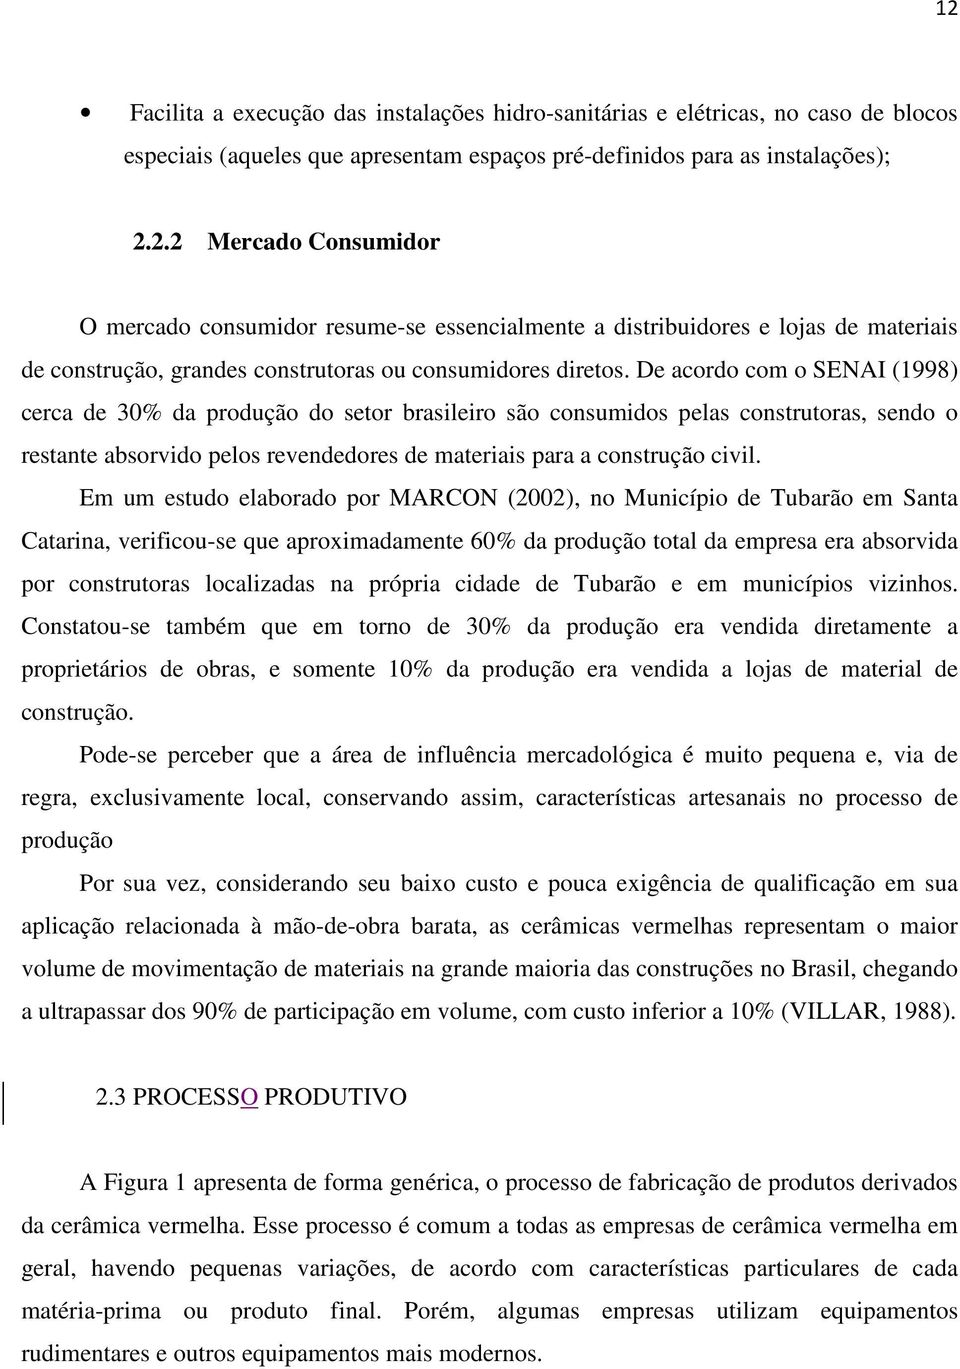 Em um estudo elaborado por MARCON (2002), no Município de Tubarão em Santa Catarina, verificou-se que aproximadamente 60% da produção total da empresa era absorvida por construtoras localizadas na